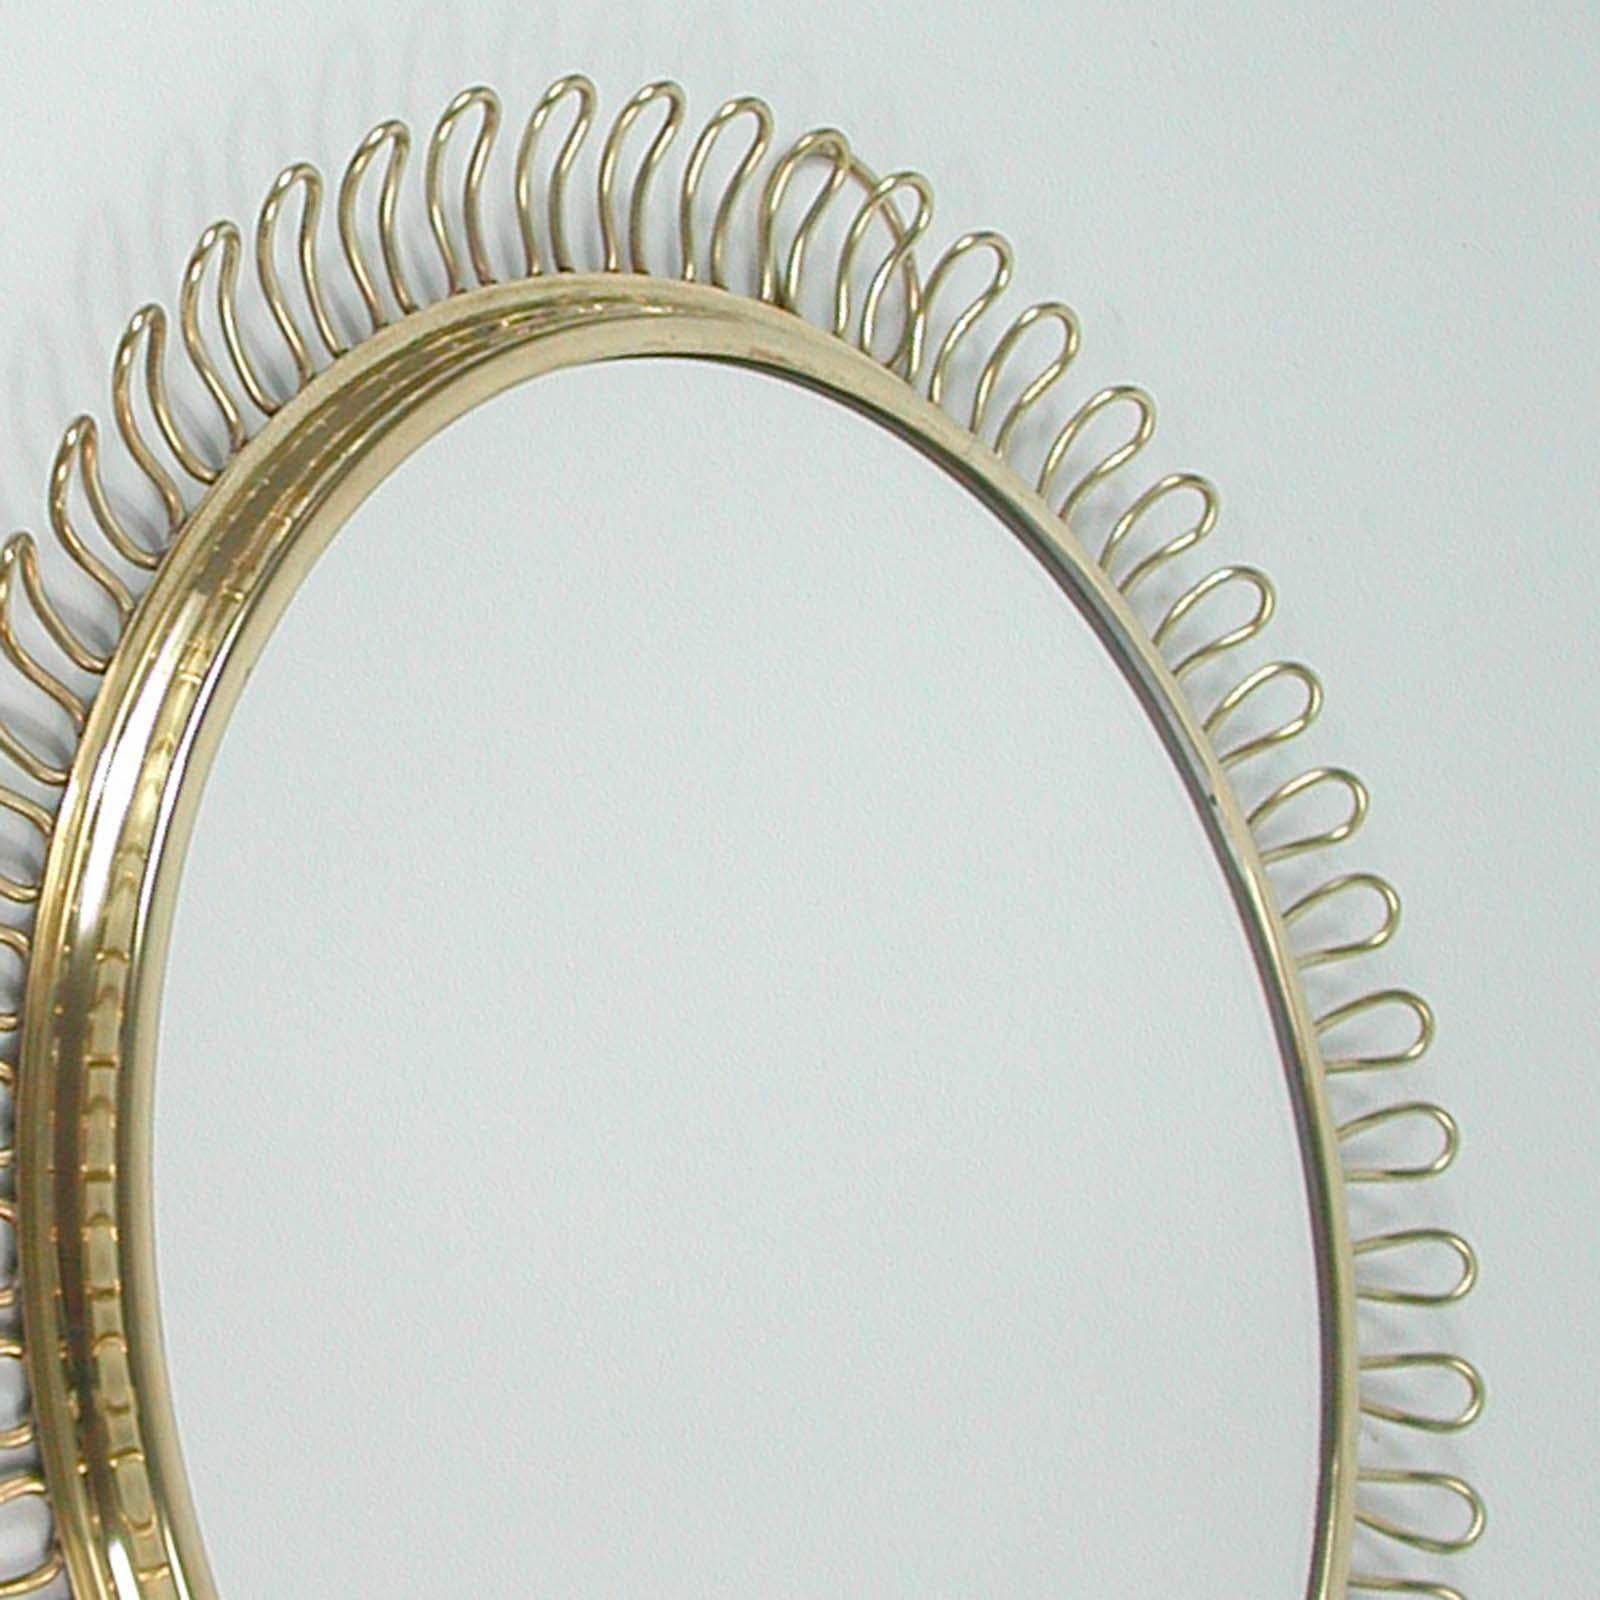 Plated Sculptural Brass round Wall Mirror by Josef Frank Svenskt Tenn, Sweden, 1950s